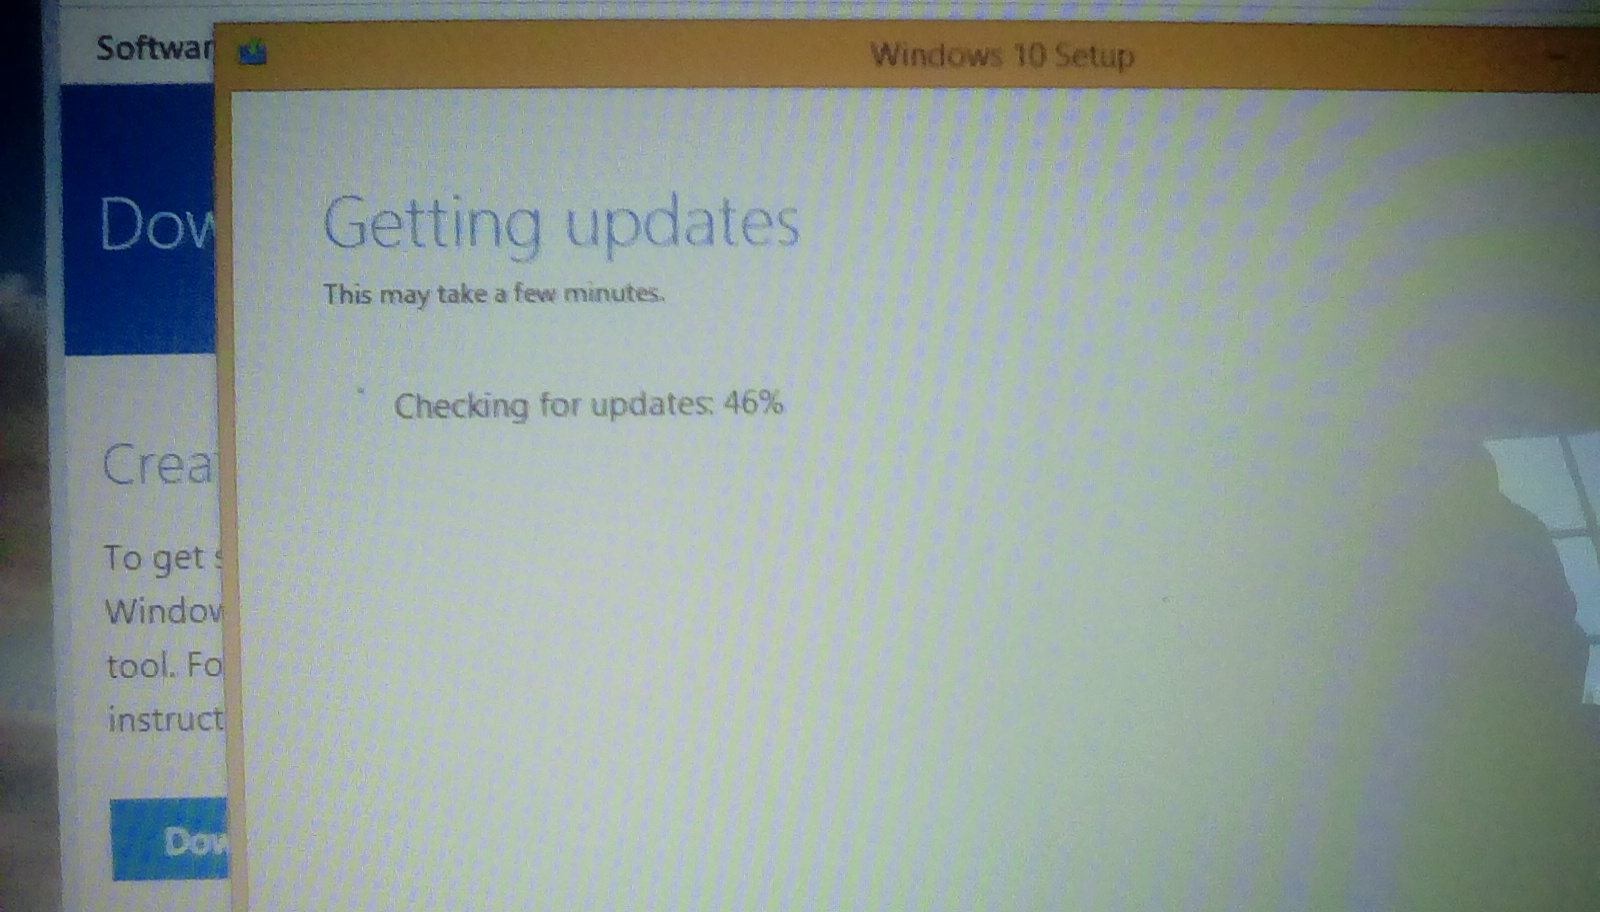 Windows 10 Update 30c94c24-5655-4c6f-855c-47ff8cf9909c?upload=true.jpg